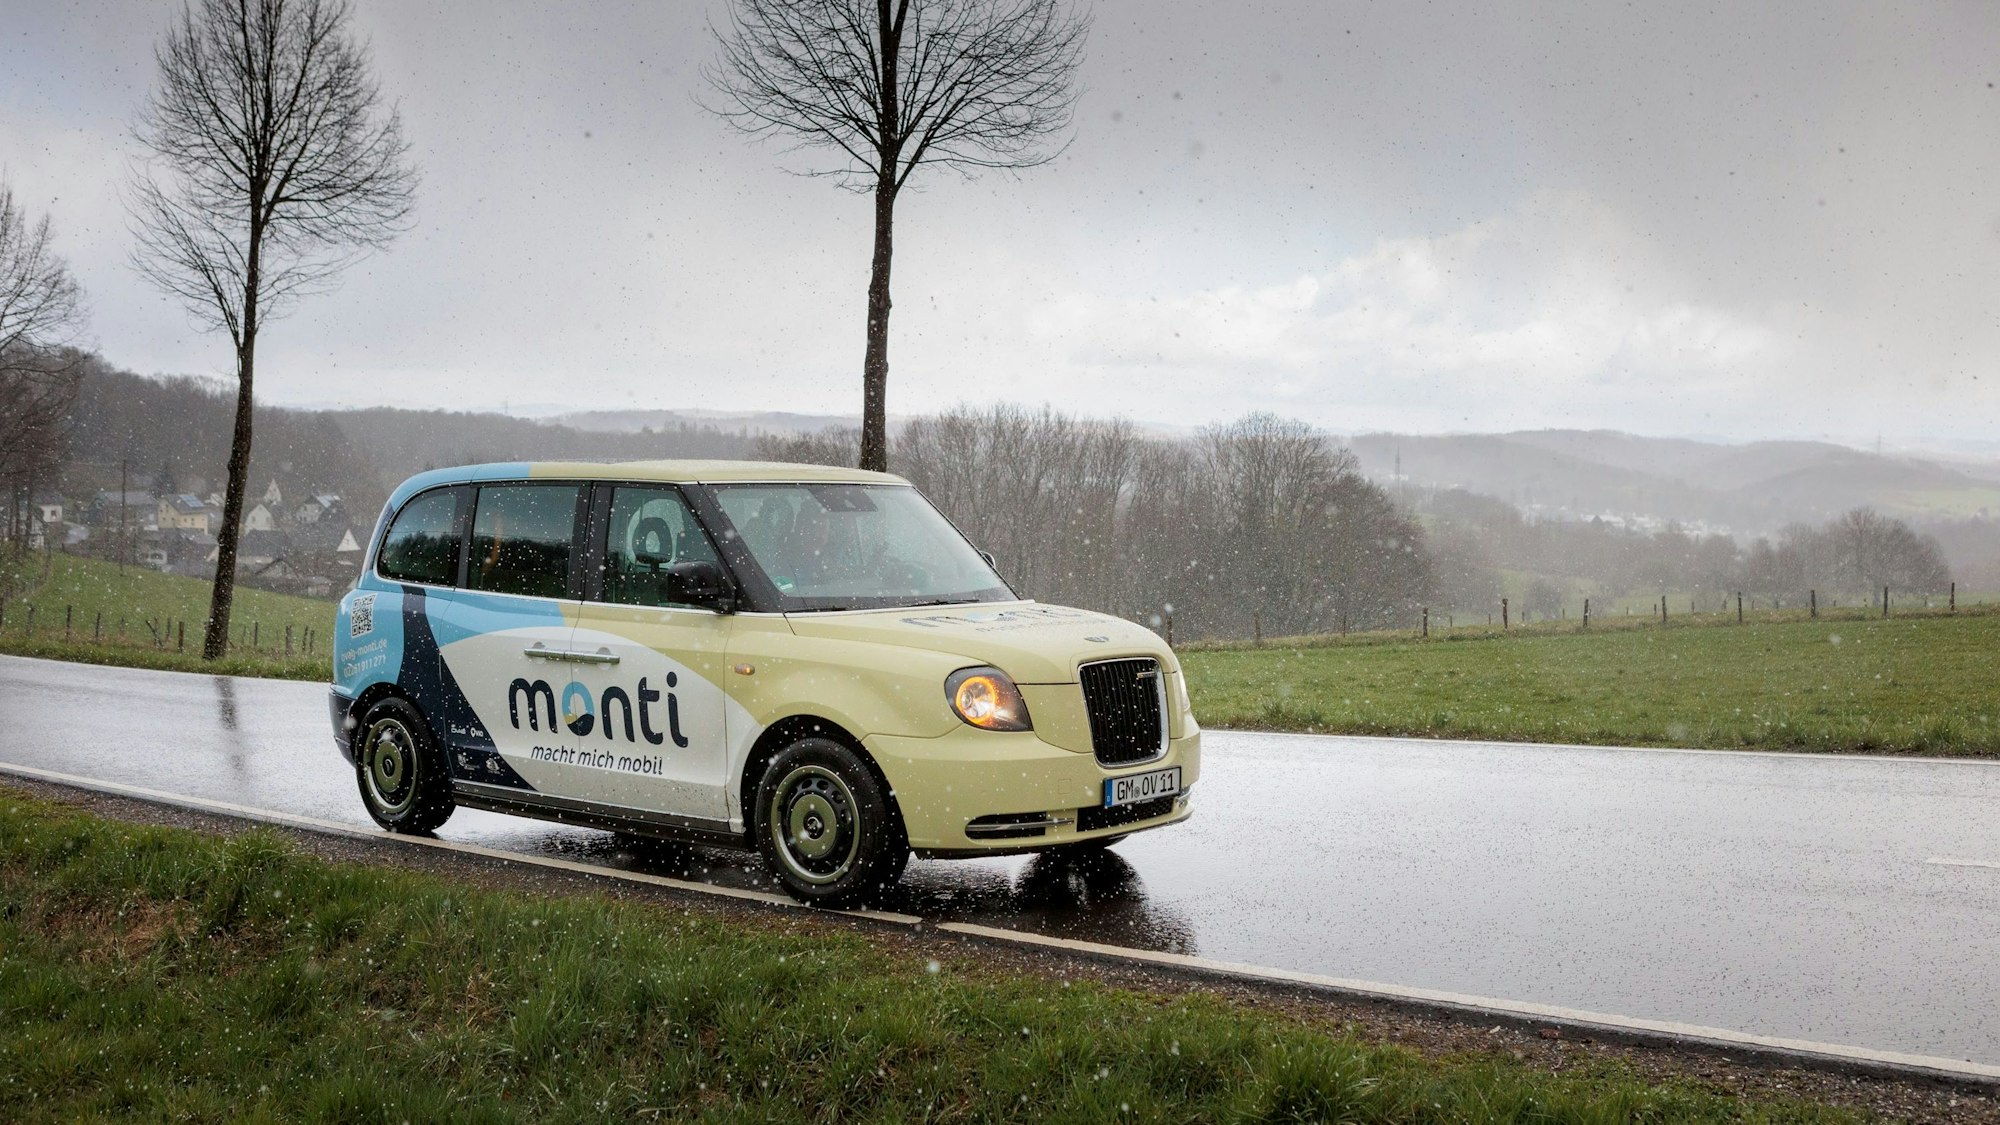 Das Foto zeigt einen Monti-Wagen, eine Art Mittelding zwischen Bus und Taxi.